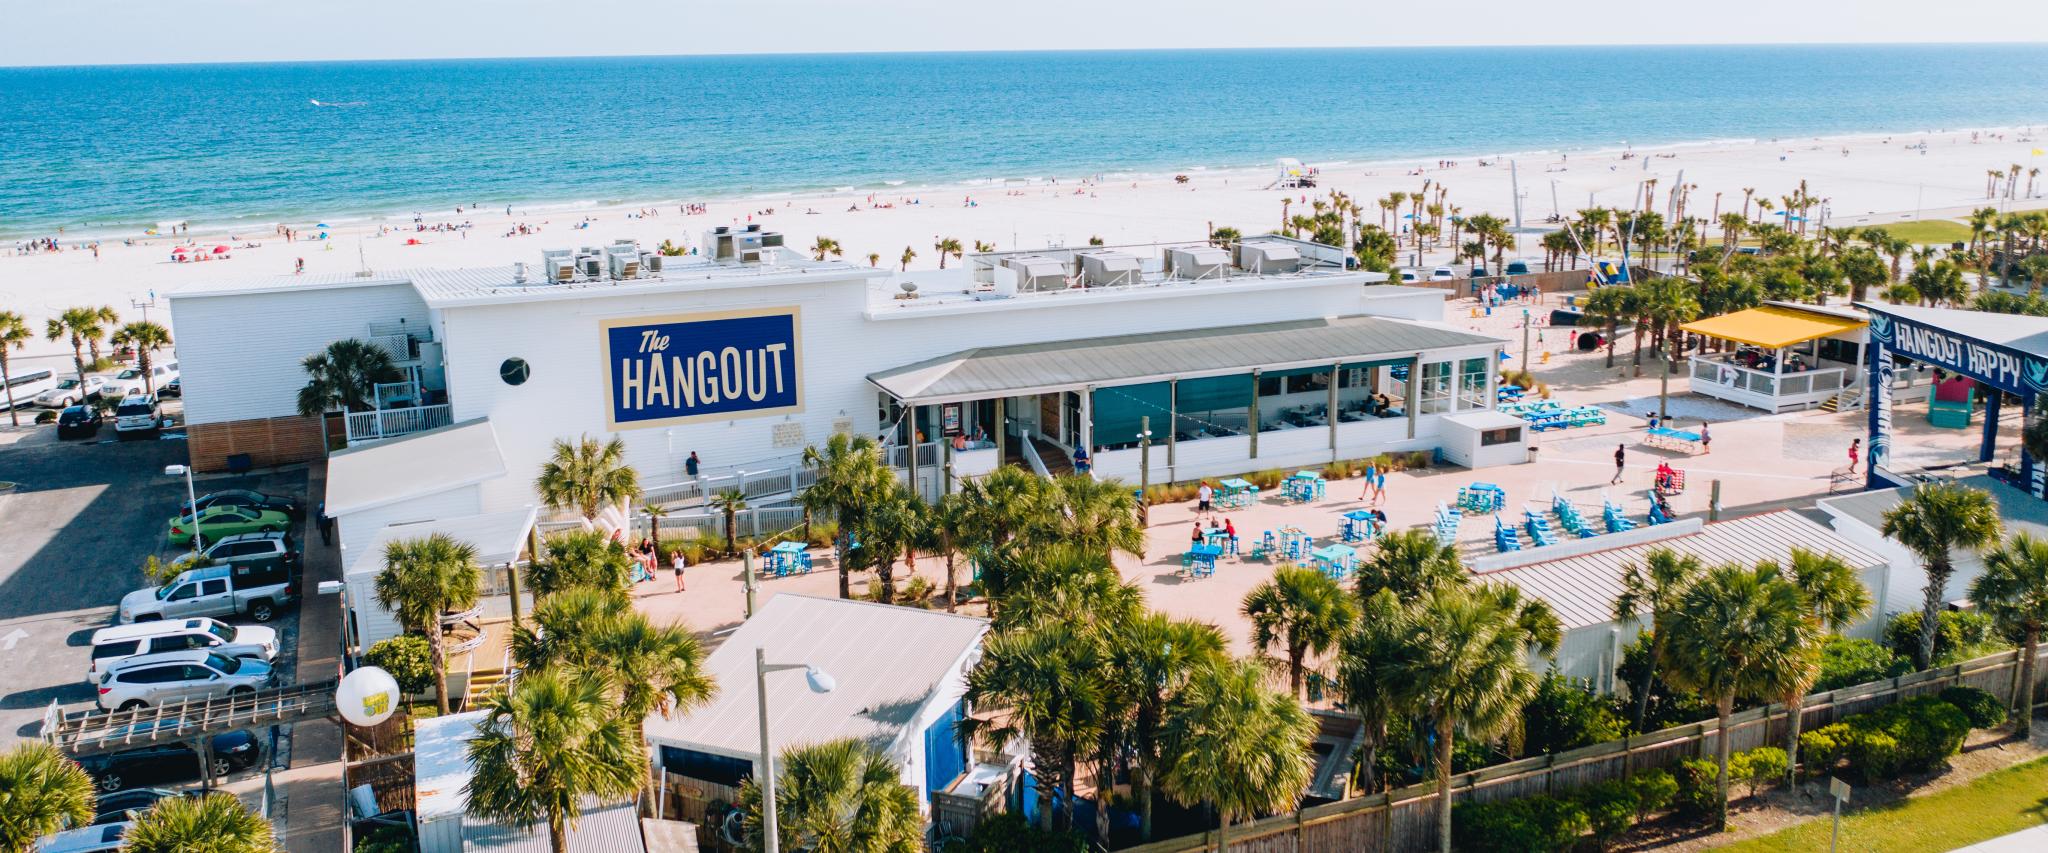 The Hangout Gulf Shores AL 